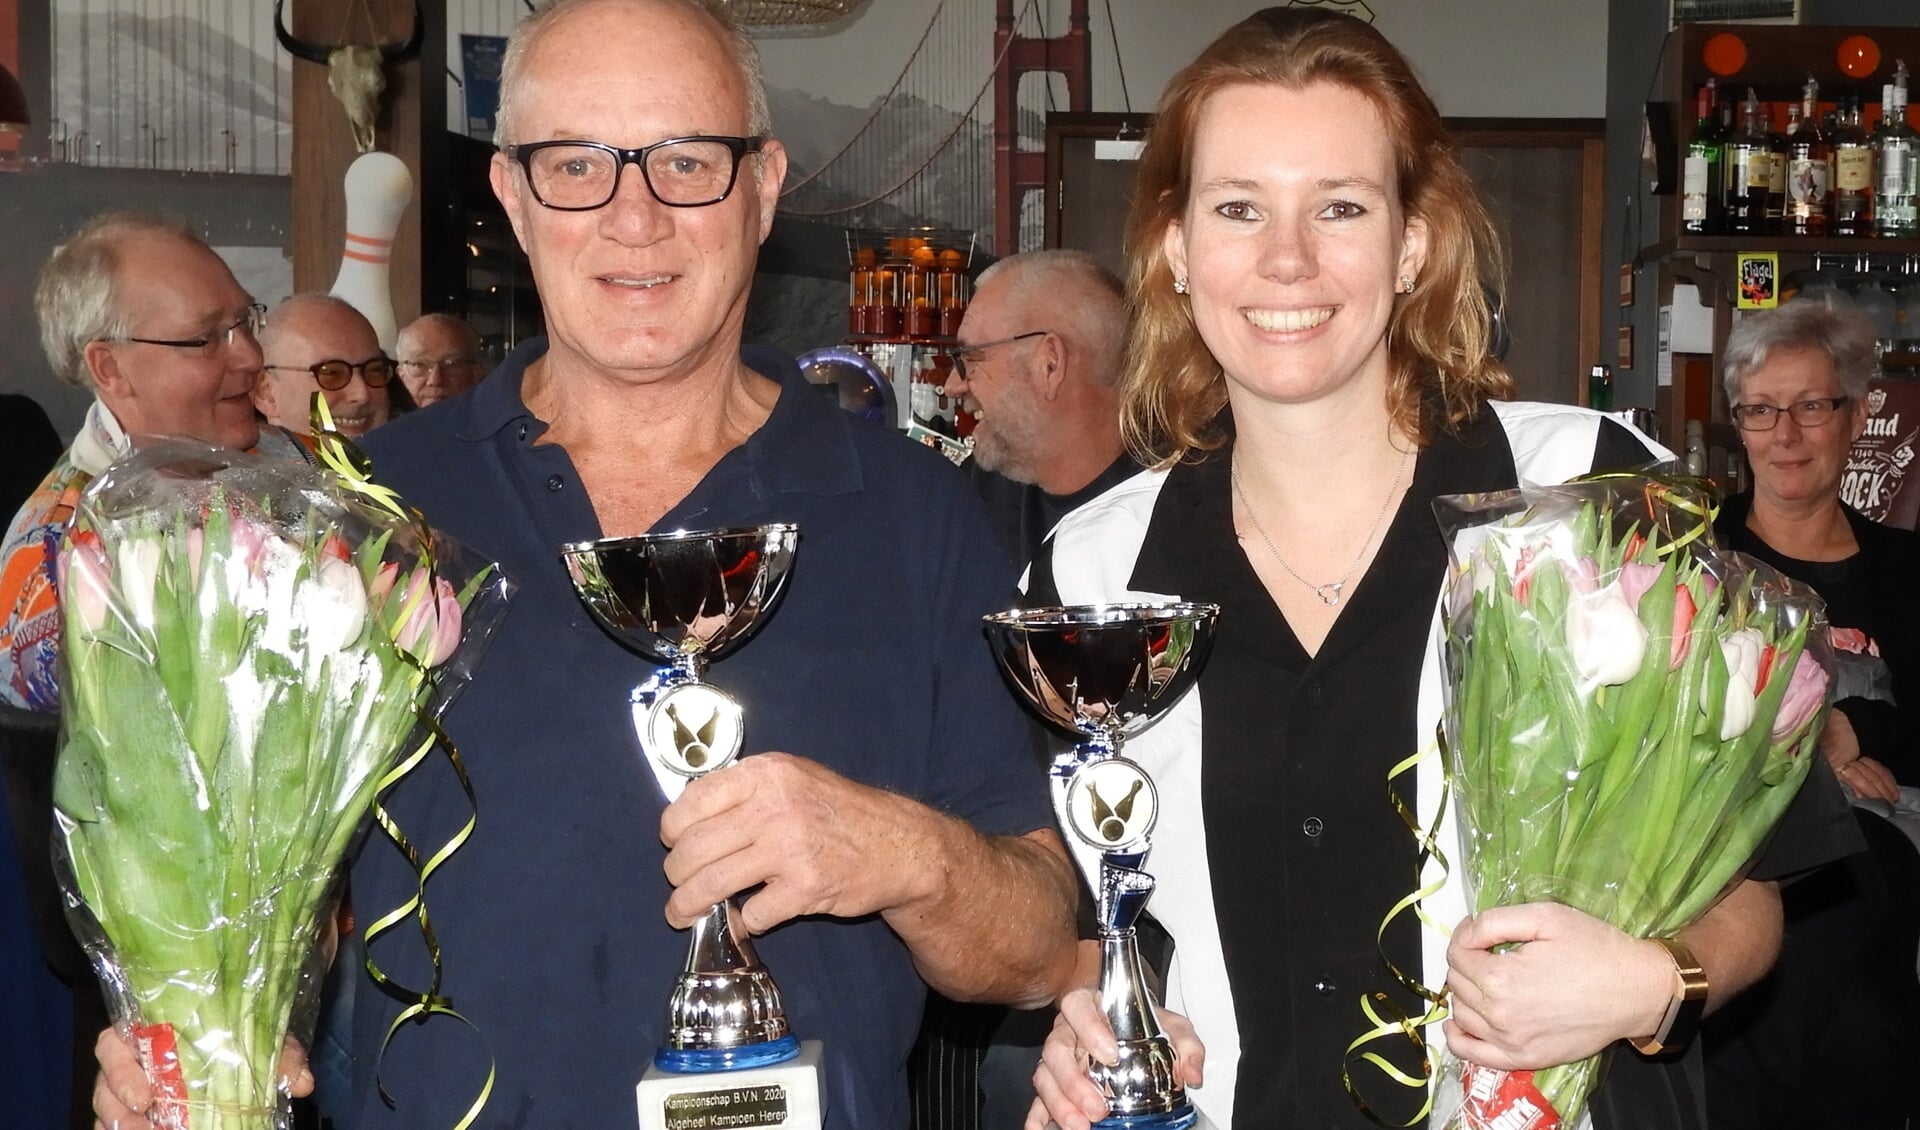 De algeheel kampioenen 2020 William van der Meij en Susan Jansen. | Foto: PR